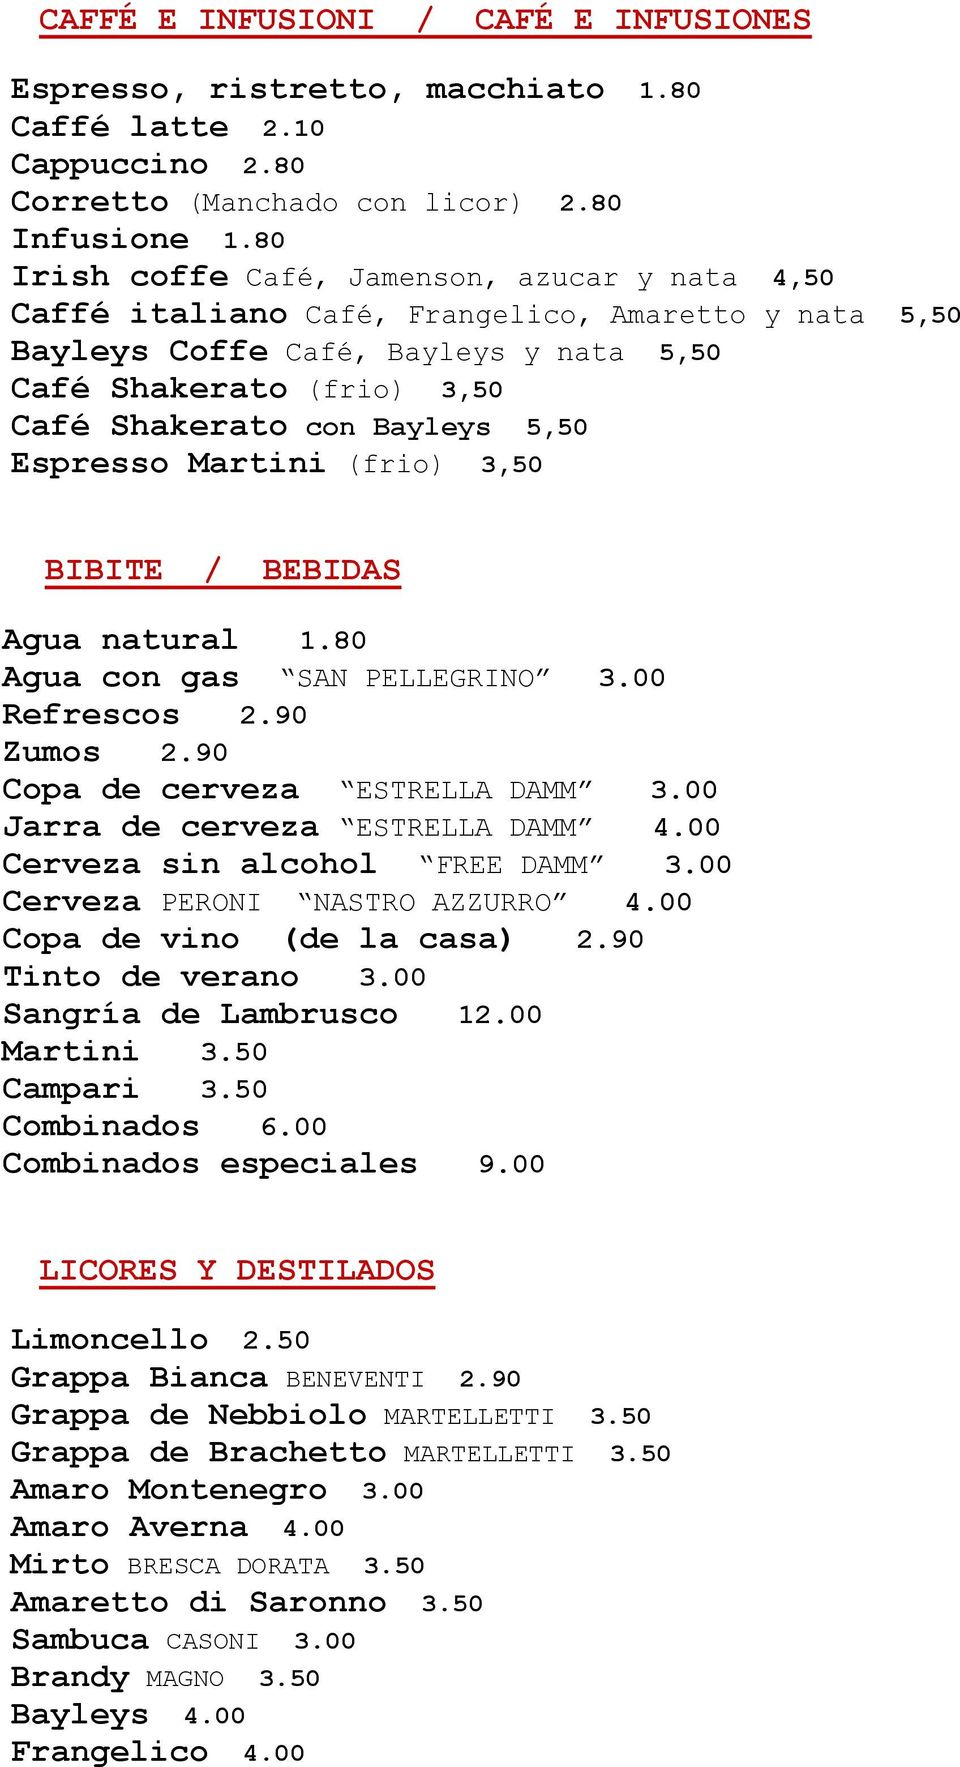 5,50 Espresso Martini (frio) 3,50 BIBITE / BEBIDAS Agua natural 1.80 Agua con gas SAN PELLEGRINO 3.00 Refrescos 2.90 Zumos 2.90 Copa de cerveza ESTRELLA DAMM 3.00 Jarra de cerveza ESTRELLA DAMM 4.